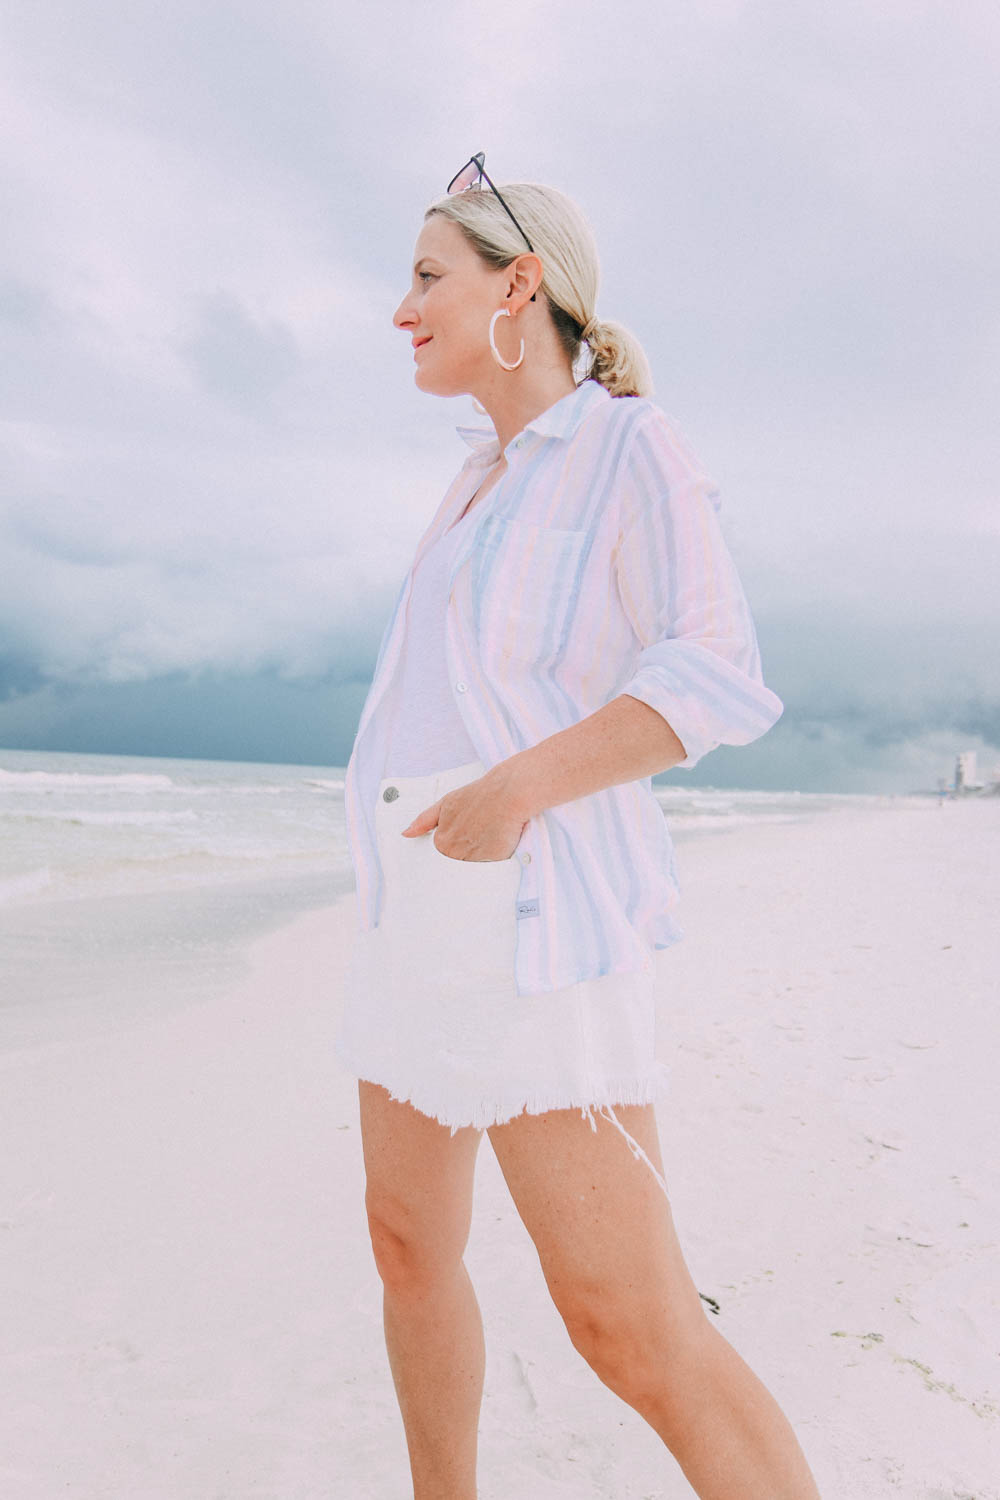 Skorts Fashion blogger busbee style wearing MinkPink white denim skirt on beach